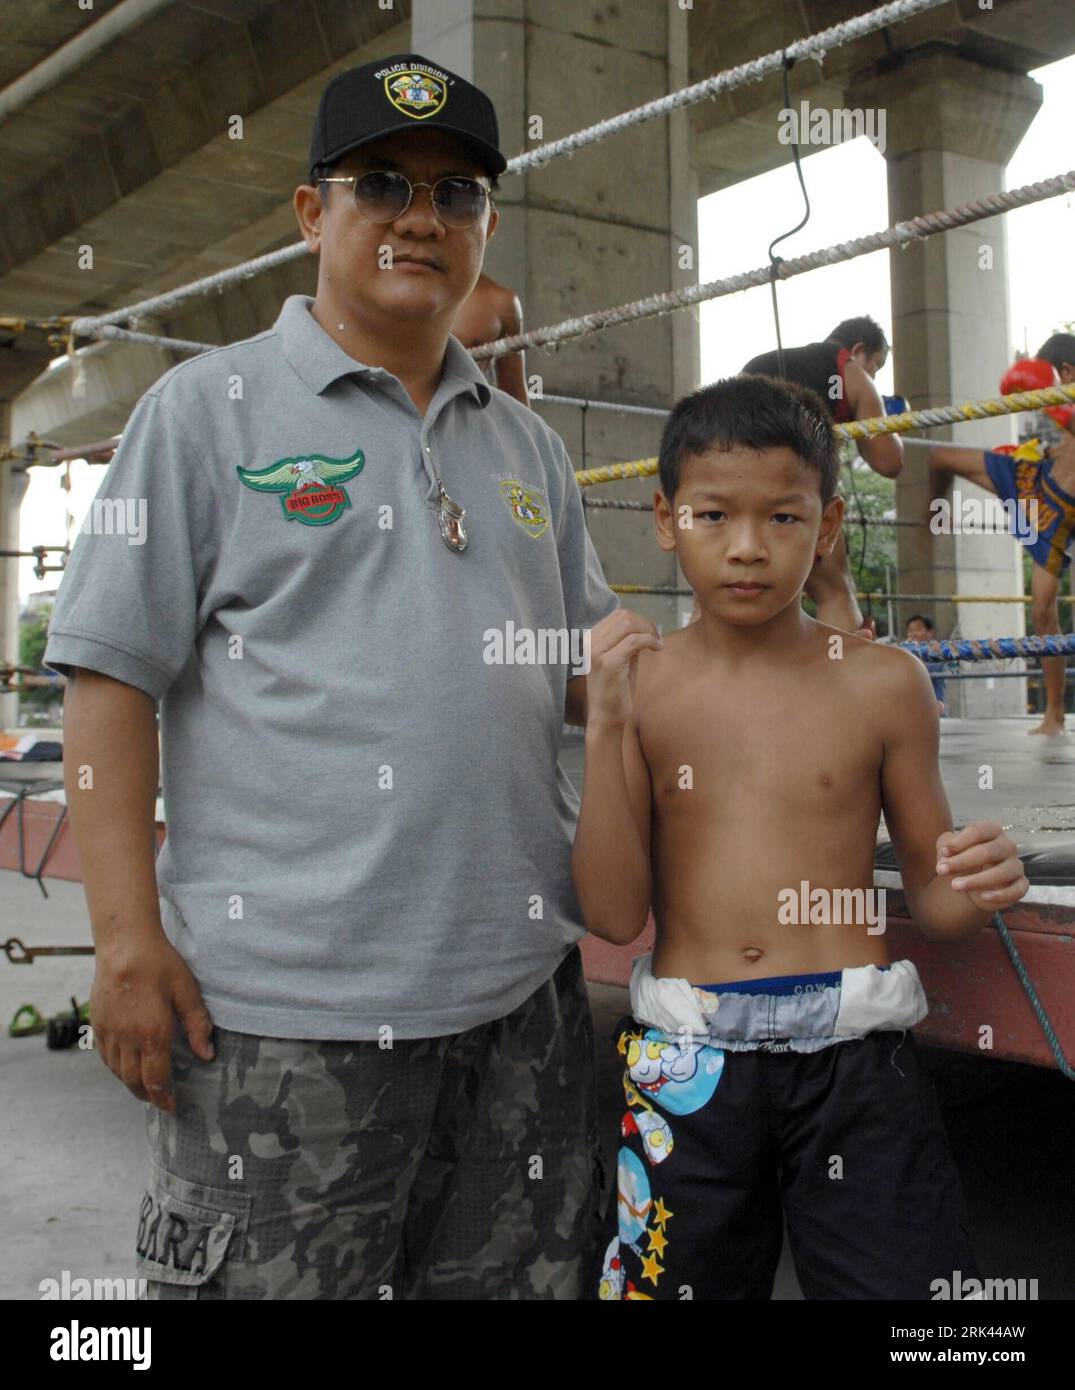 Bildnummer: 53585697 Datum: 20.10.2009 Copyright: imago/Xinhua (091108) -- BANGKOK, 8. November 2009 (Xinhua) -- Chatploy S. Boonsawat posiert mit seinem Vater in Bangkok, Hauptstadt von Thailand, 20. Oktober 2009. Ich möchte ein nationaler Champion des Muay Thai (traditionelles Thai-Boxen) sein! Chatploy S. Boonsawat sagte es der Reporterin. Wenn er nicht gesehen wird, ist es schwierig, den 12-jährigen Jungen mit dunkler Haut und rundem Körper mit den vier Meistergürteln und dem Rekord von 74 Siegen in 80 Spielen zu verbinden. Hinter diesen Glorien, Schweiß, Tränen und sogar Blutfluss steckt Chatploy in seiner sechsjährigen Muay Thai-Karriere. Unter einer Autobahn in Bangkok, Th Stockfoto